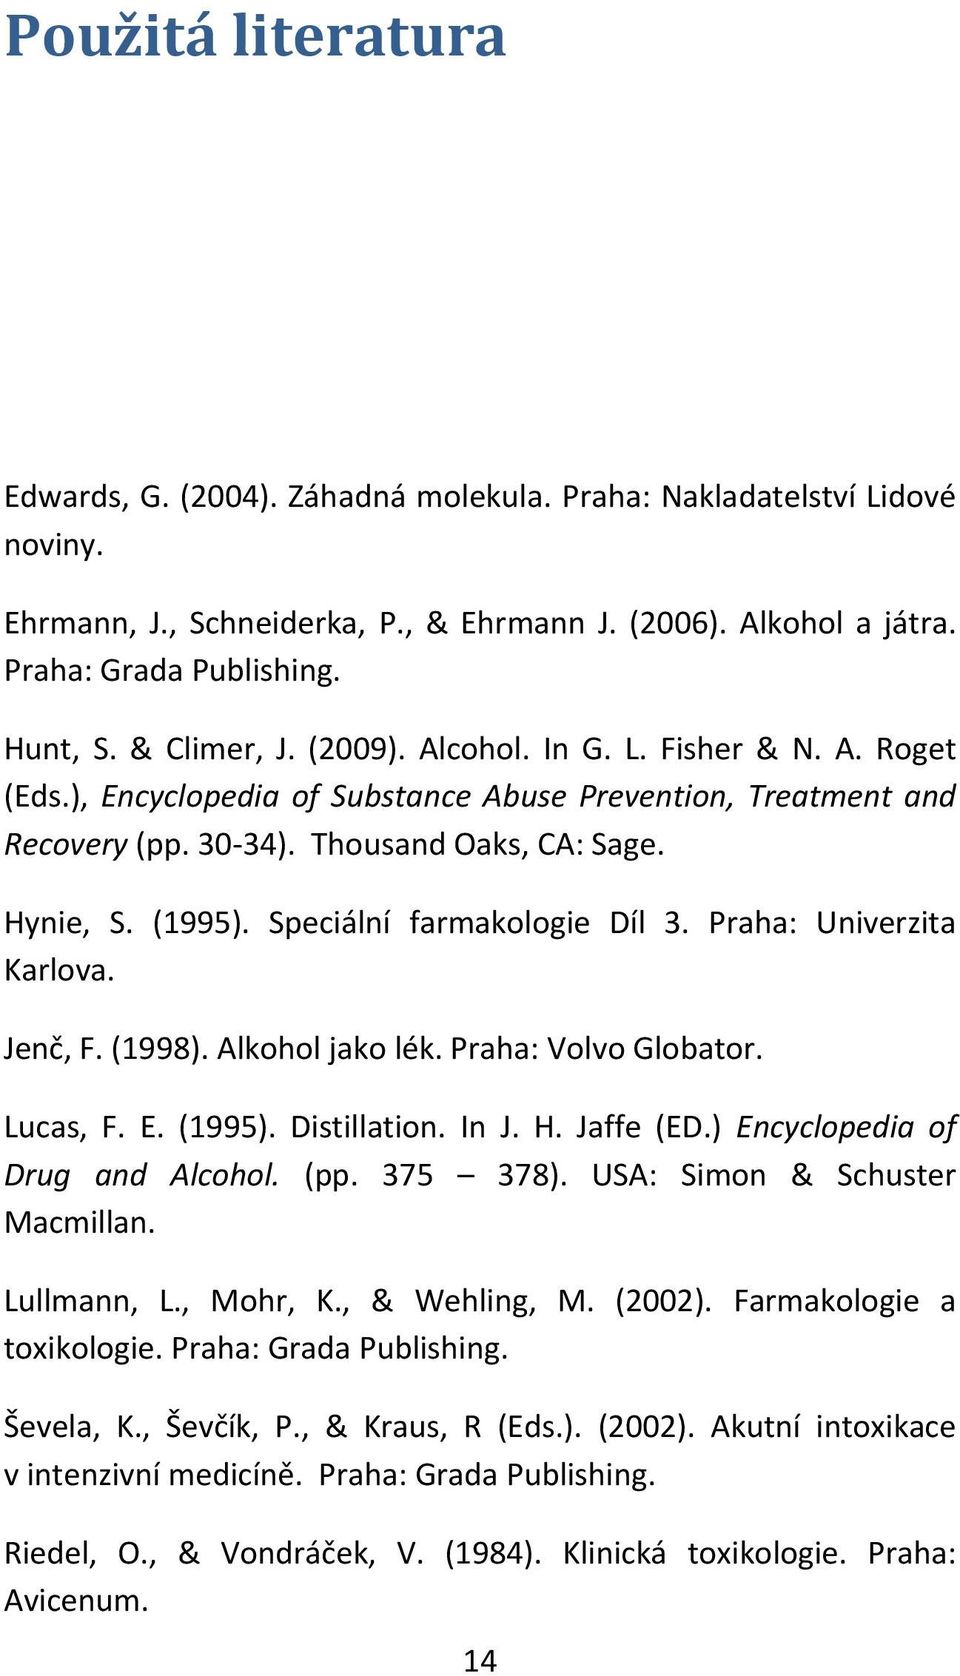 Speciální farmakologie Díl 3. Praha: Univerzita Karlova. Jenč, F. (1998). Alkohol jako lék. Praha: Volvo Globator. Lucas, F. E. (1995). Distillation. In J. H. Jaffe (ED.